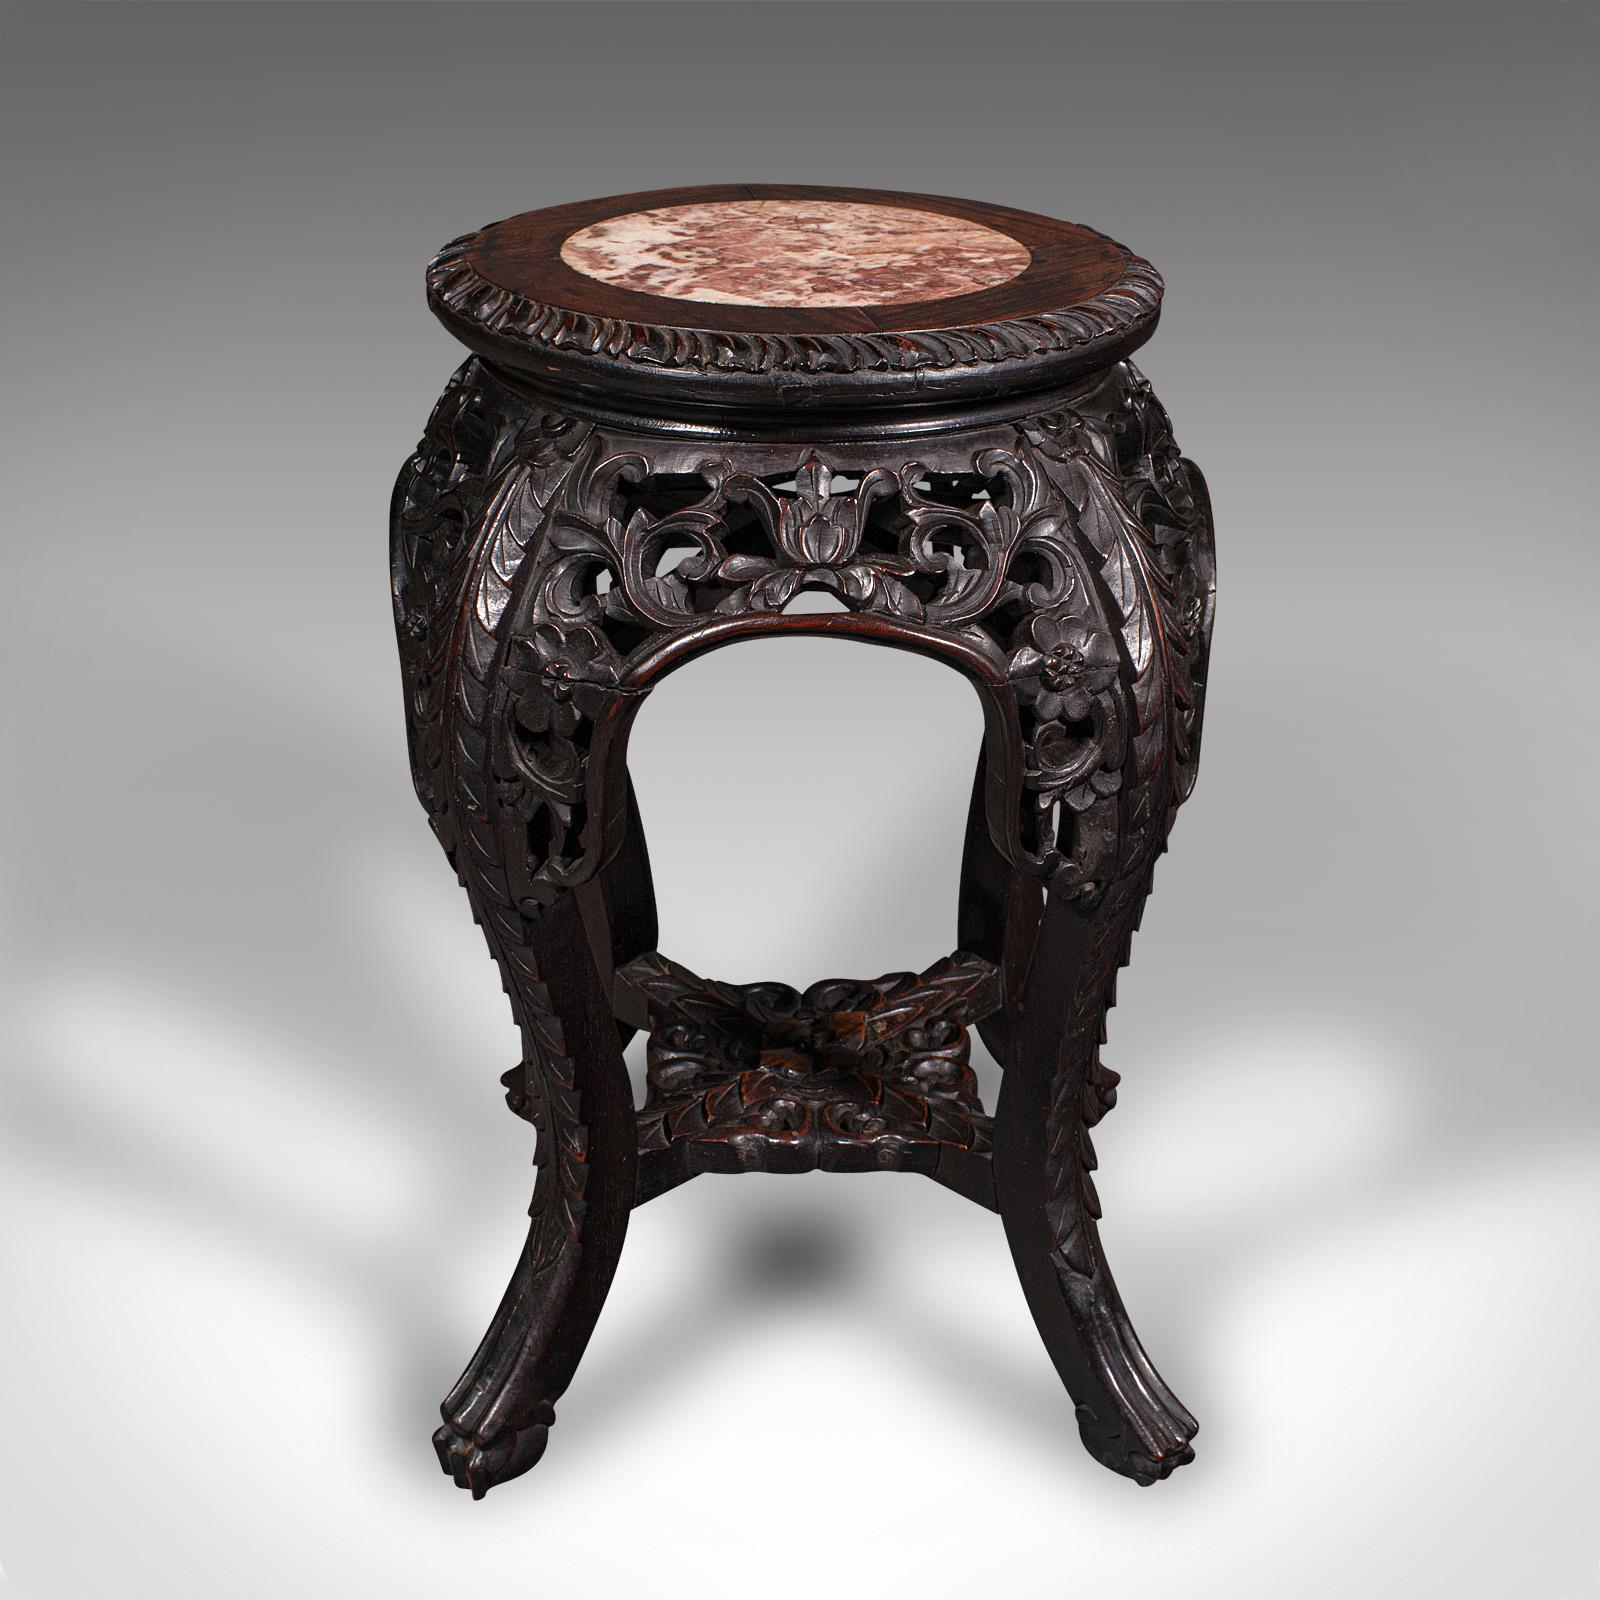 Dies ist ein antiker Pflanzentisch. Ein chinesischer Jardiniereständer oder Lampentisch aus Palisander und Marmor aus der späten viktorianischen Zeit, um 1900.

Von gedrungener Proportion und reichlich geschnitzt
Mit wünschenswerter Alterspatina und